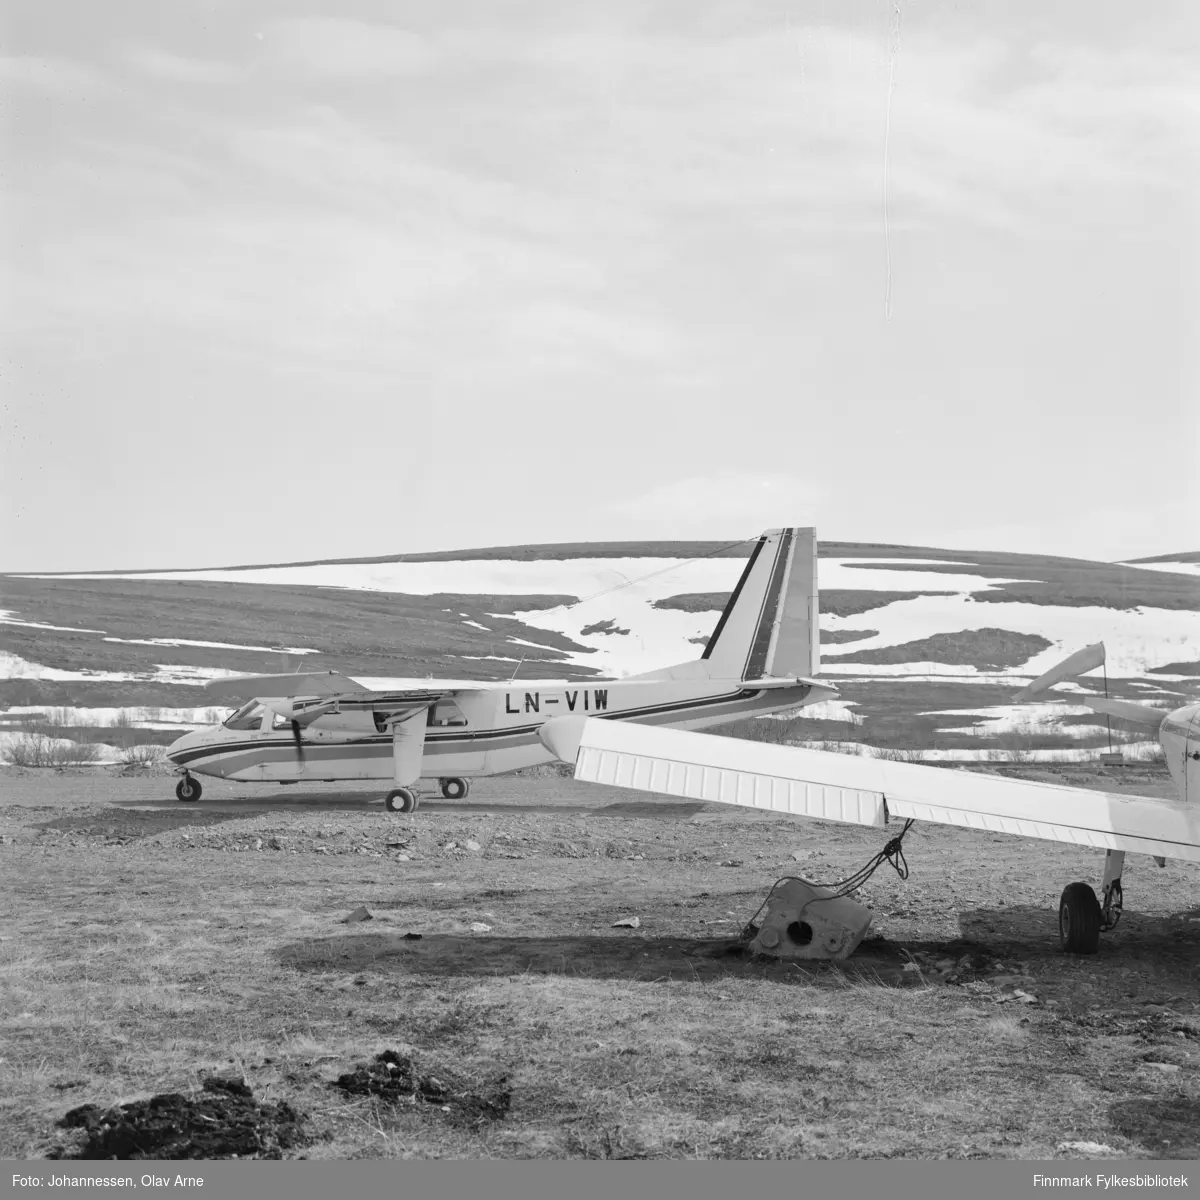 Islander tilhørende Nordving på flyplassen i Båtsfjorddalen


Flyet til venstre har teskten "Ln-VIW" skrevet på siden 